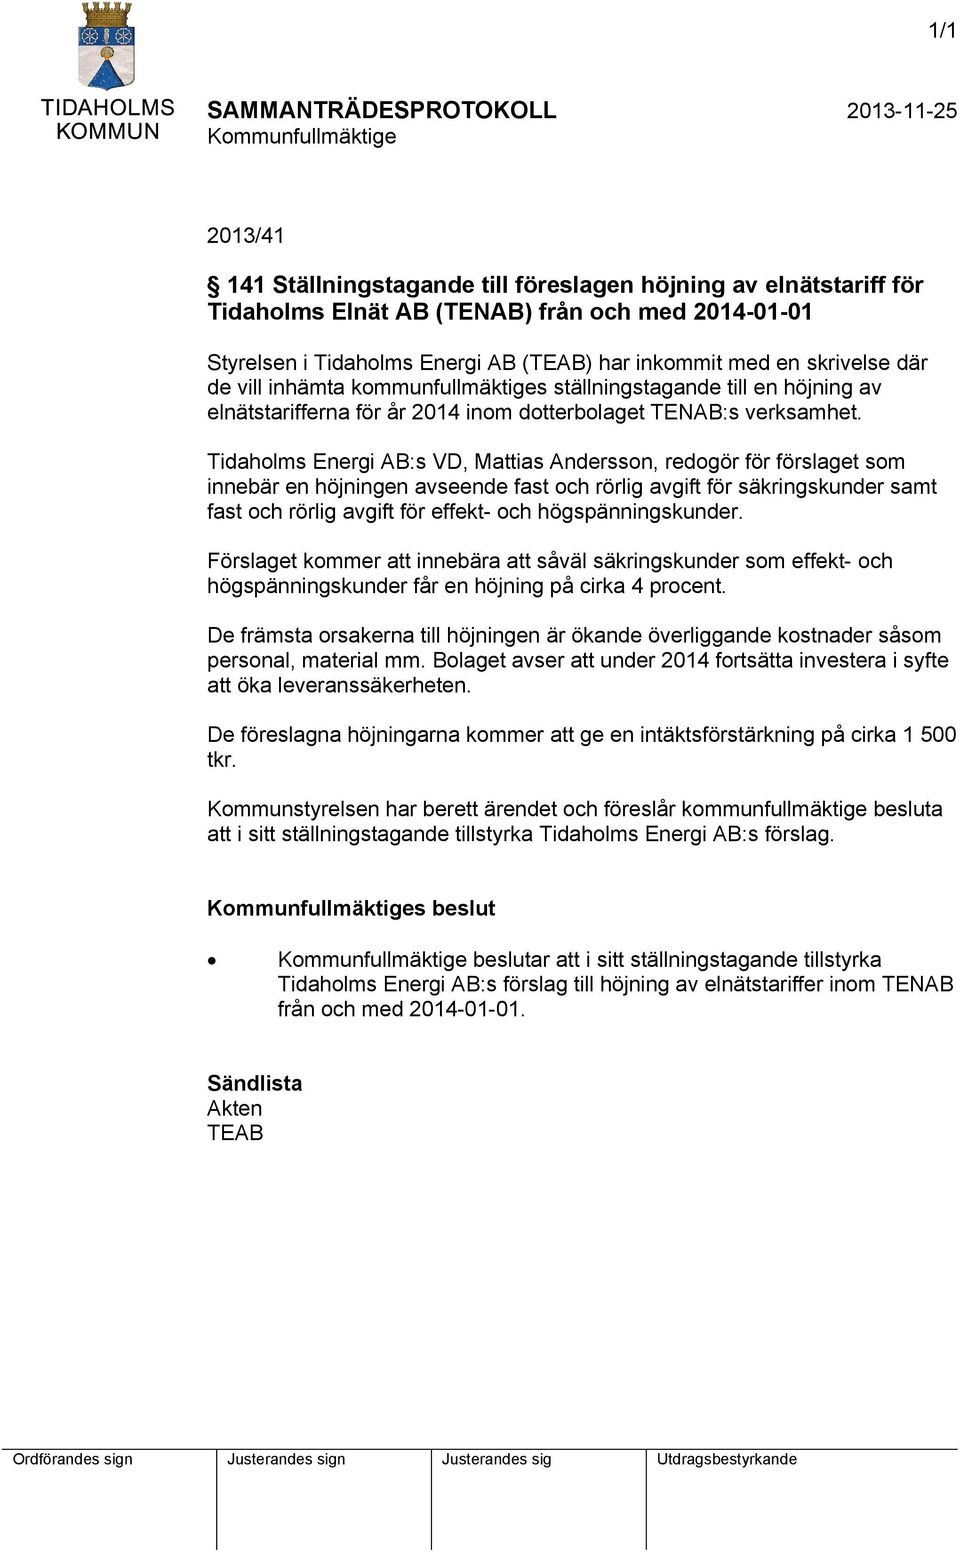 Tidaholms Energi AB:s VD, Mattias Andersson, redogör för förslaget som innebär en höjningen avseende fast och rörlig avgift för säkringskunder samt fast och rörlig avgift för effekt- och